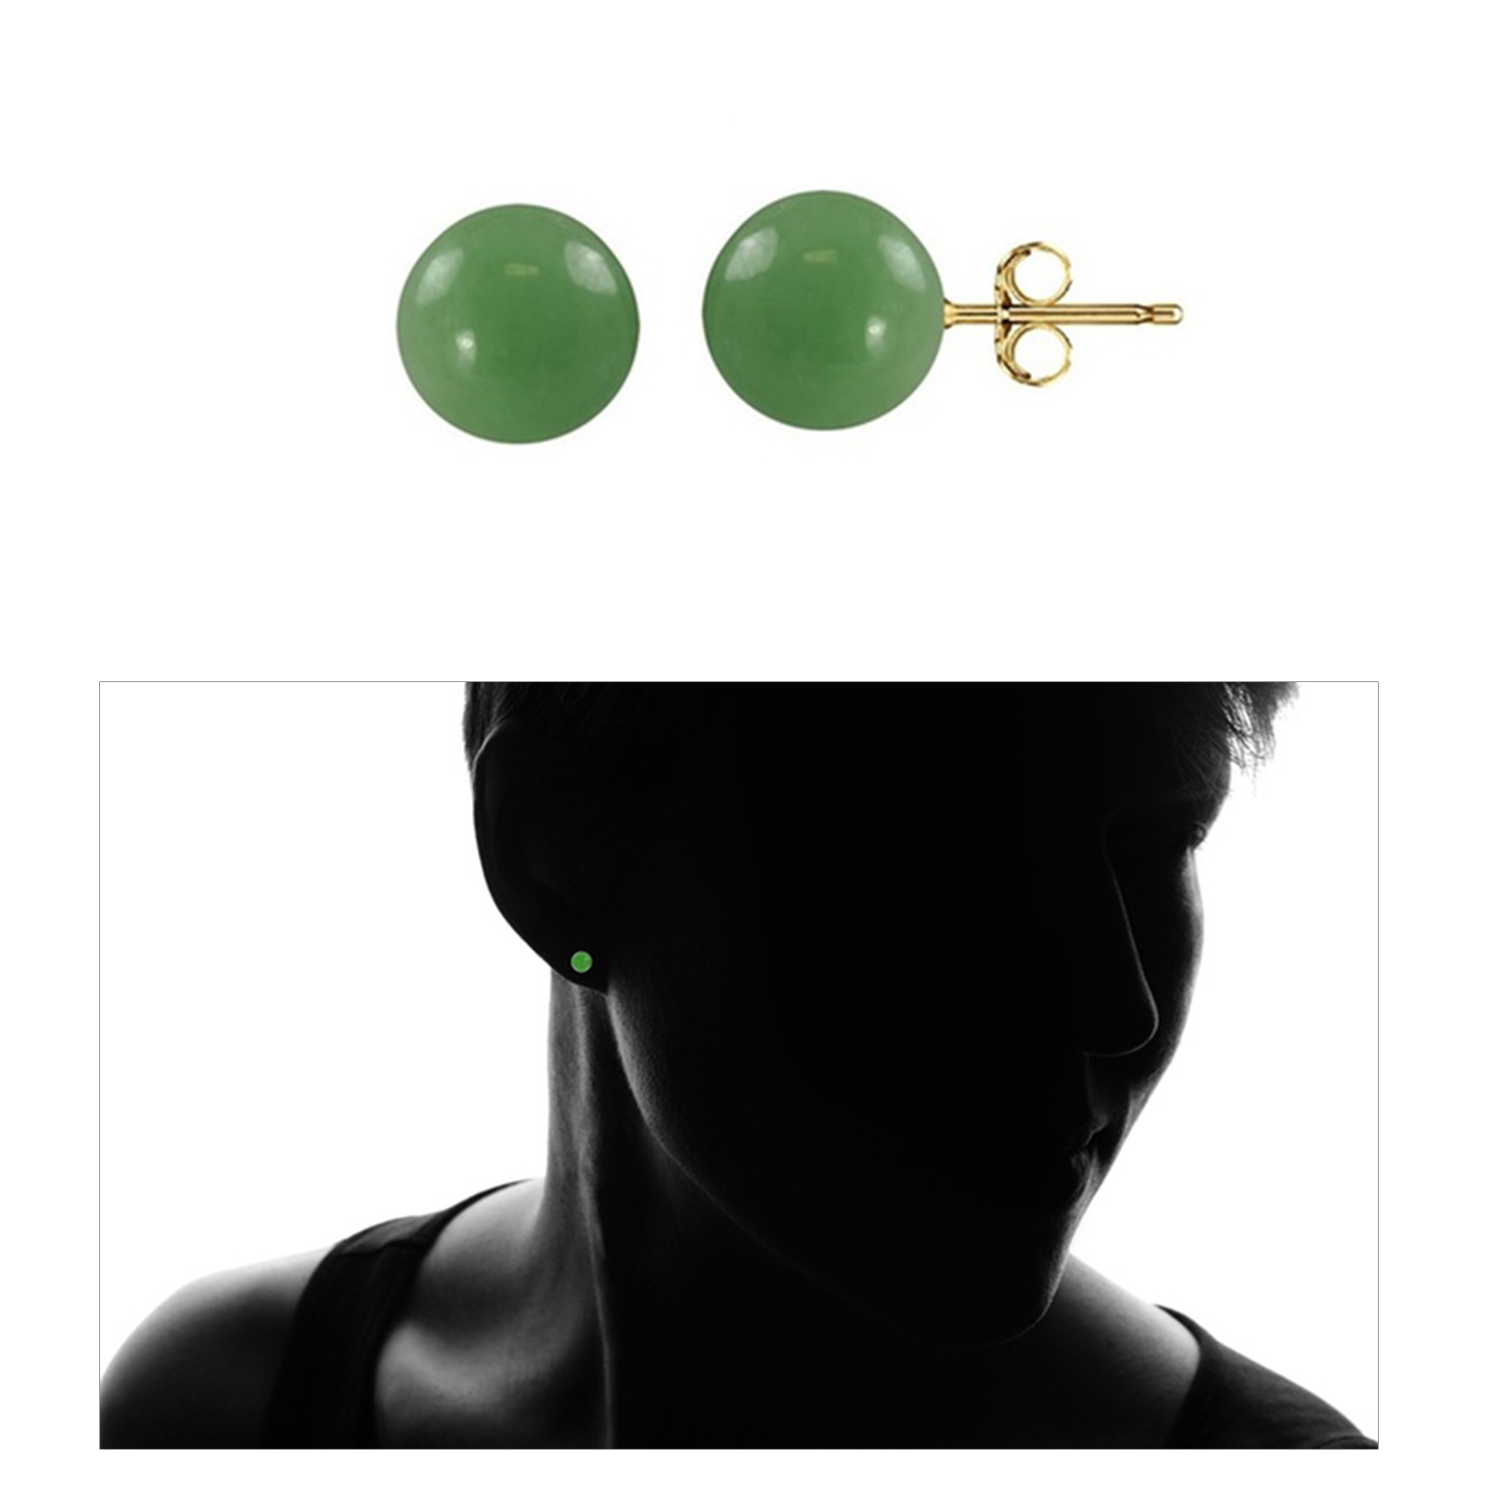 14K Gold Genuine Jade Gemstone Ball Stud Earrings